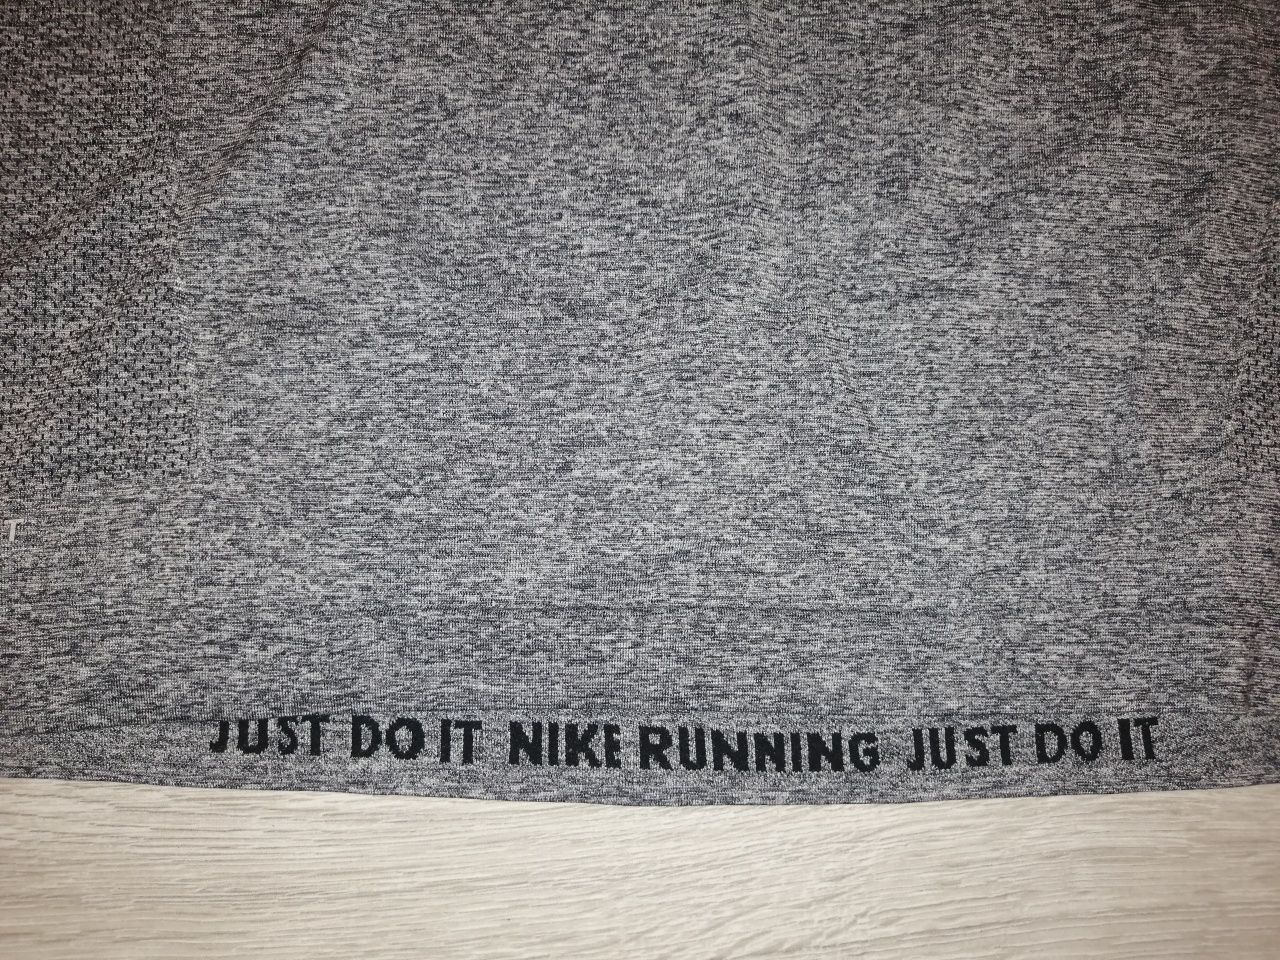 Nowa koszulka termoaktywna męska Nike Dry Fit, do biegania, rozmiar M